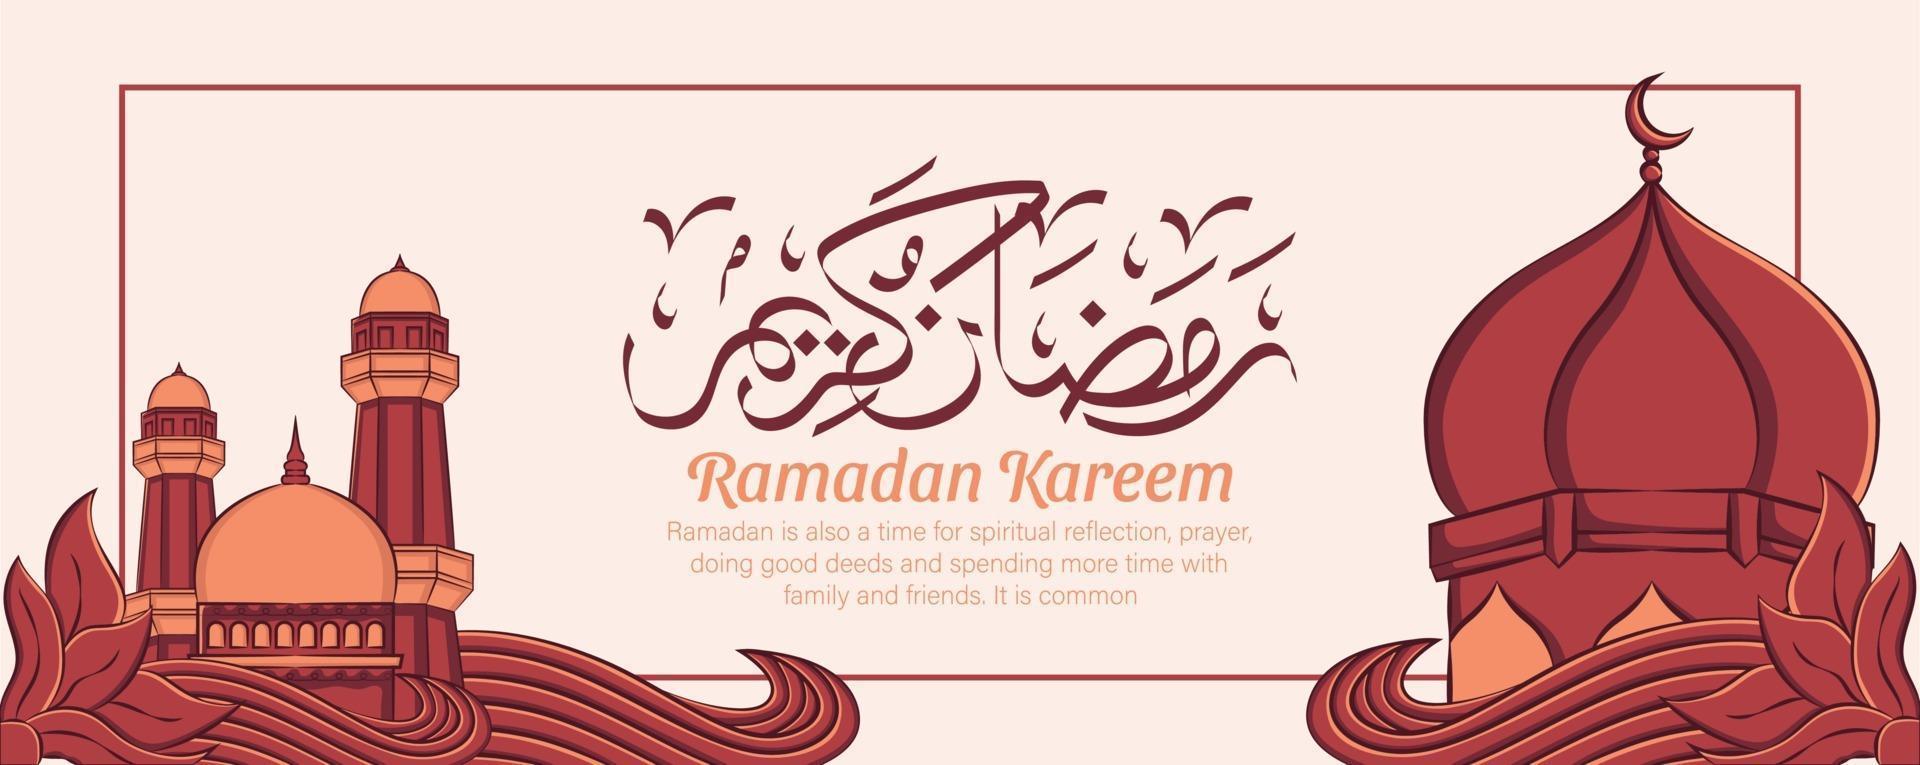 ramadan kareem banner met hand getrokken islamitische illustratie ornament op witte achtergrond. vector